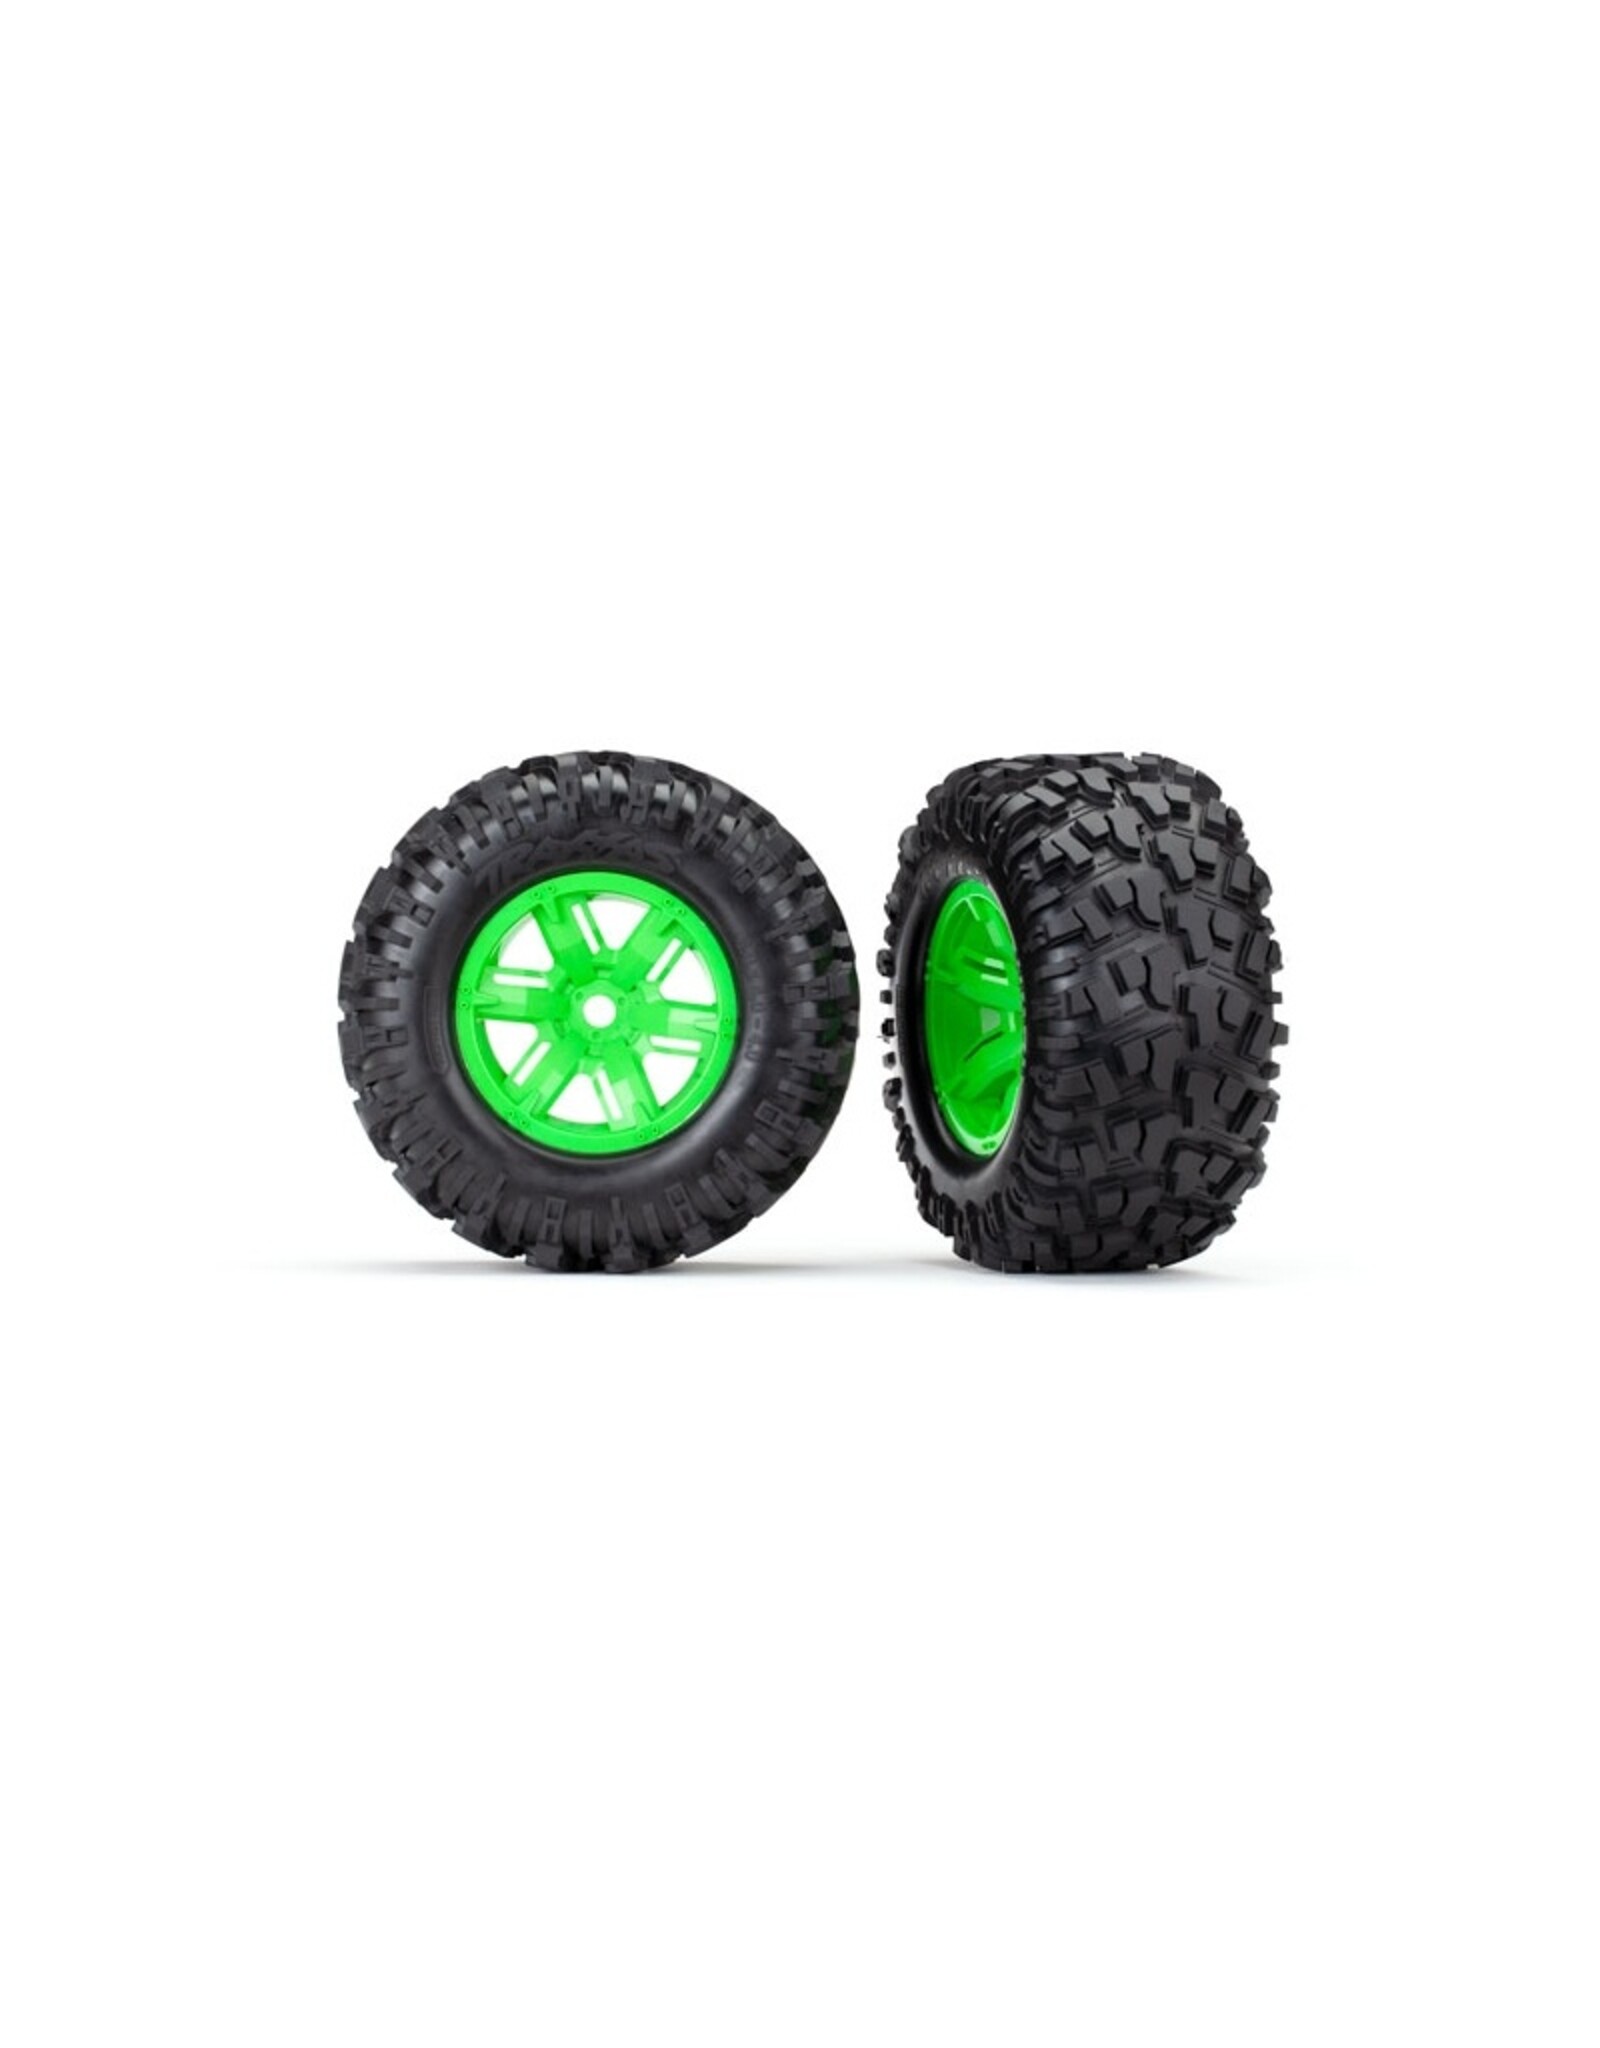 TRA7772G Tires & wheels, assembled, glued (X-Maxx green wheels, Maxx AT tires, foam inserts) (left & right) (2)